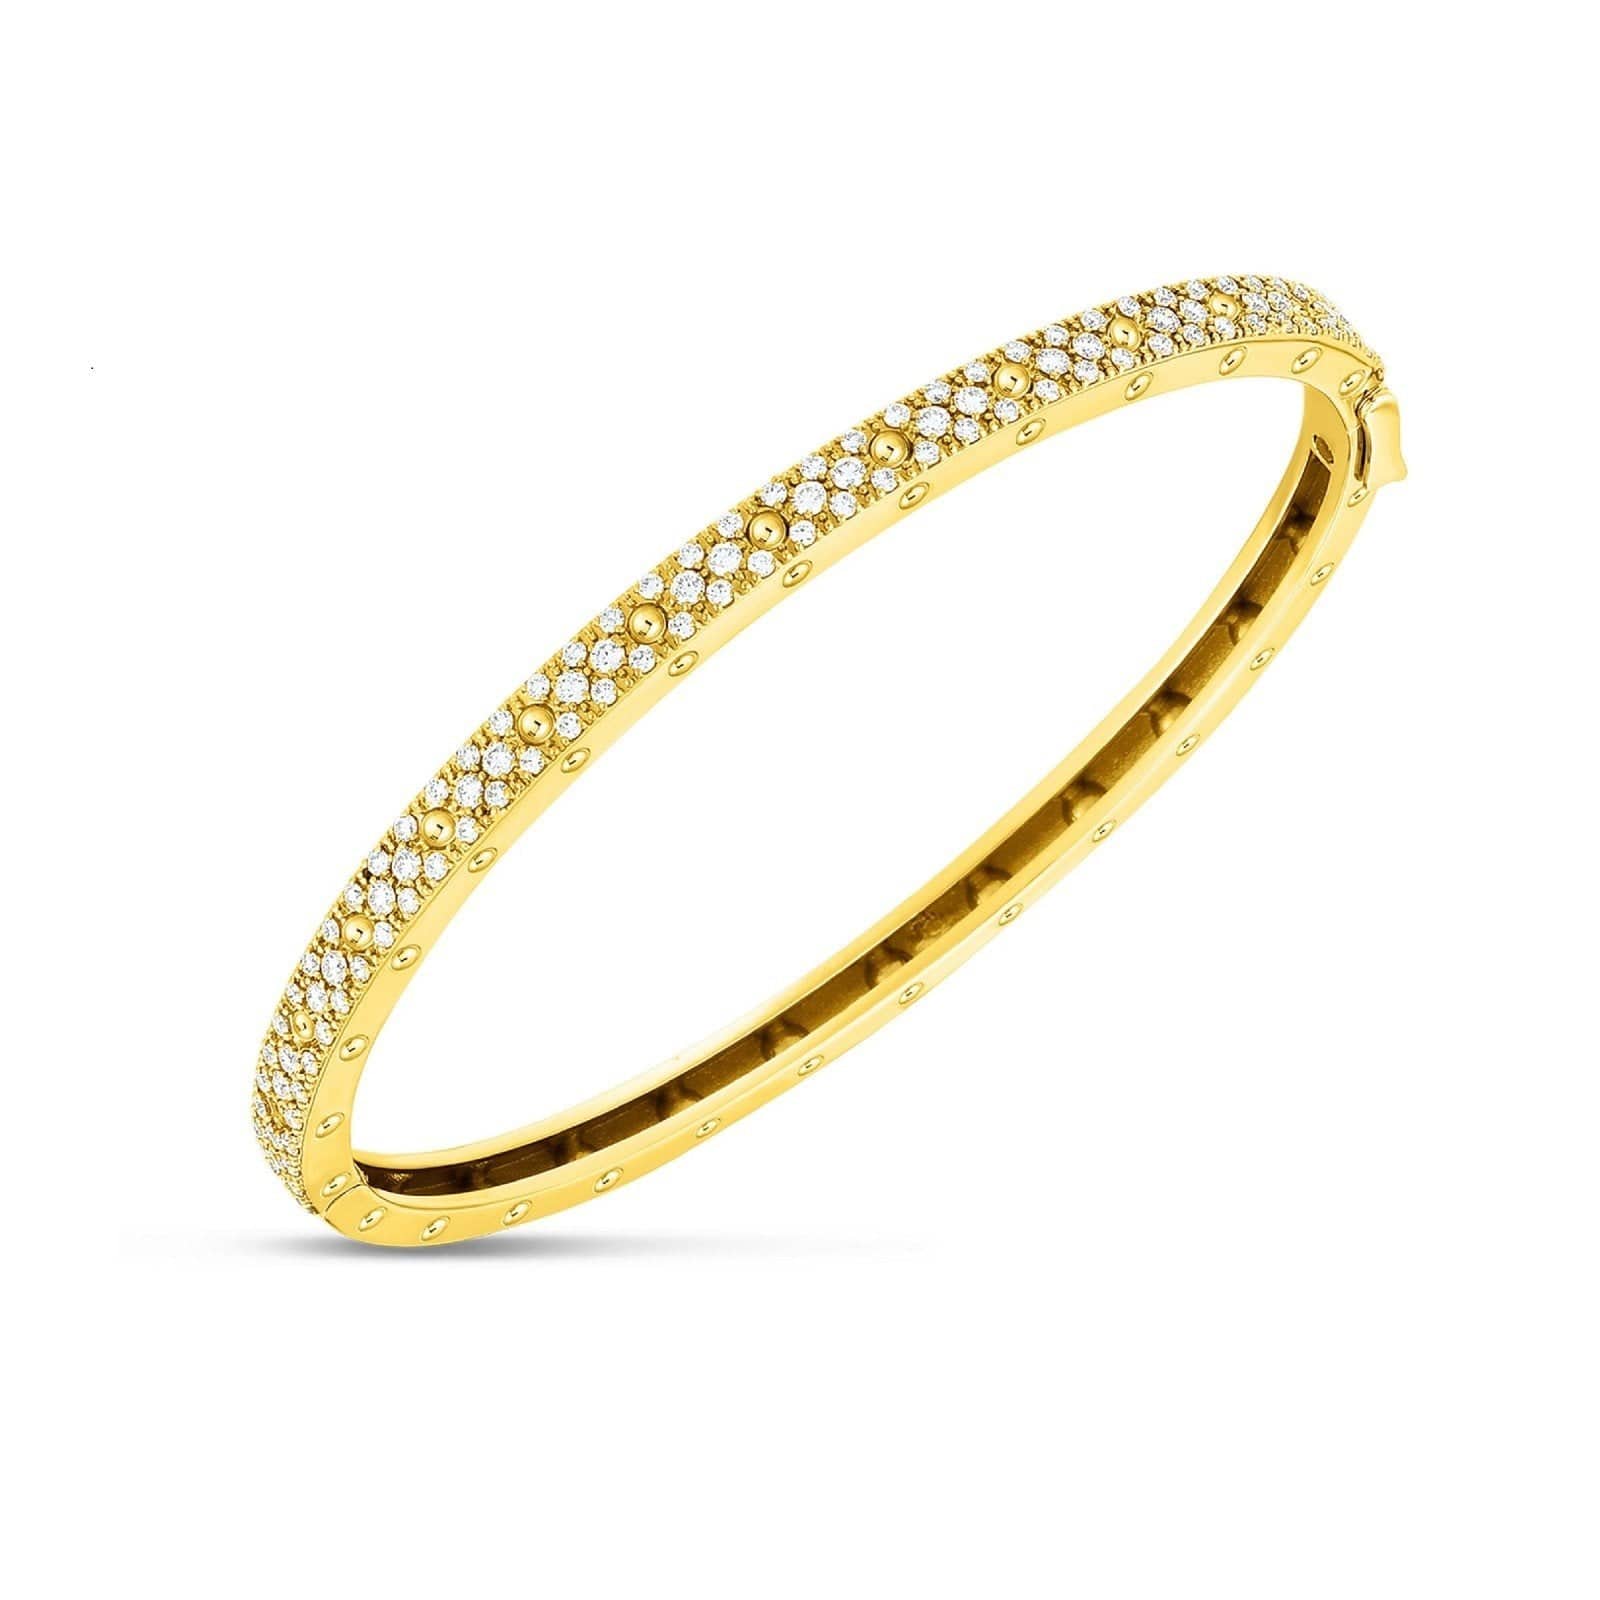 18K Yellow Gold Symphony Diamond Bangle Bracelet